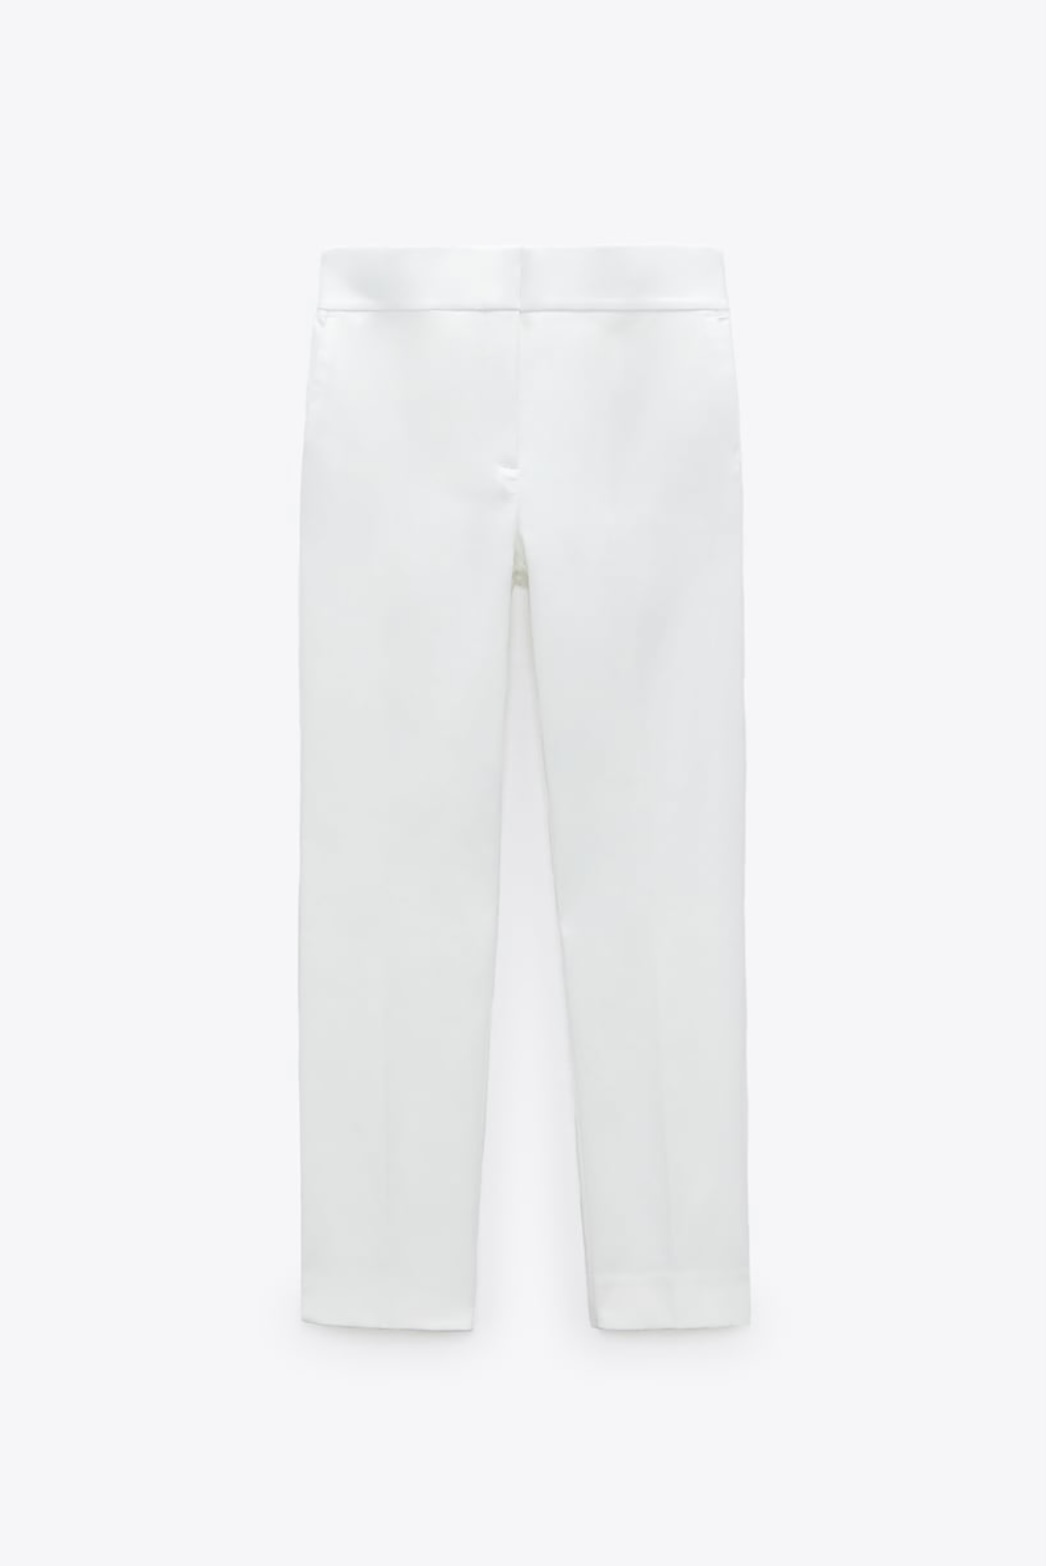 Pantalón blanco de Zara